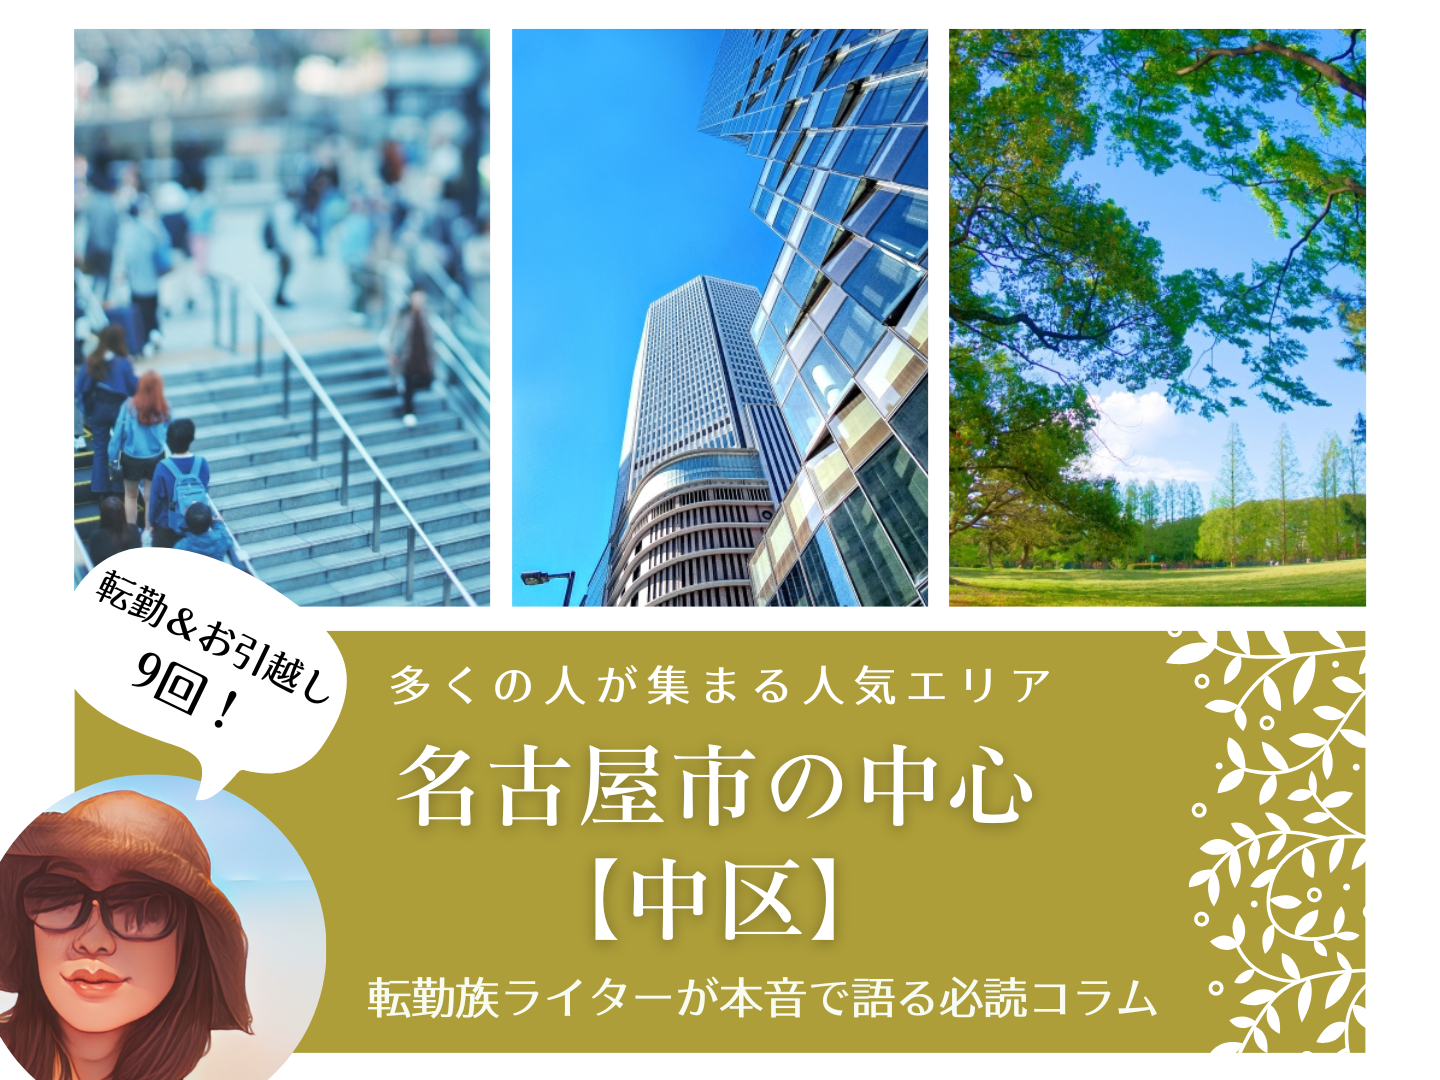 多くの人が集まる人気エリア、名古屋市の中心【中区】